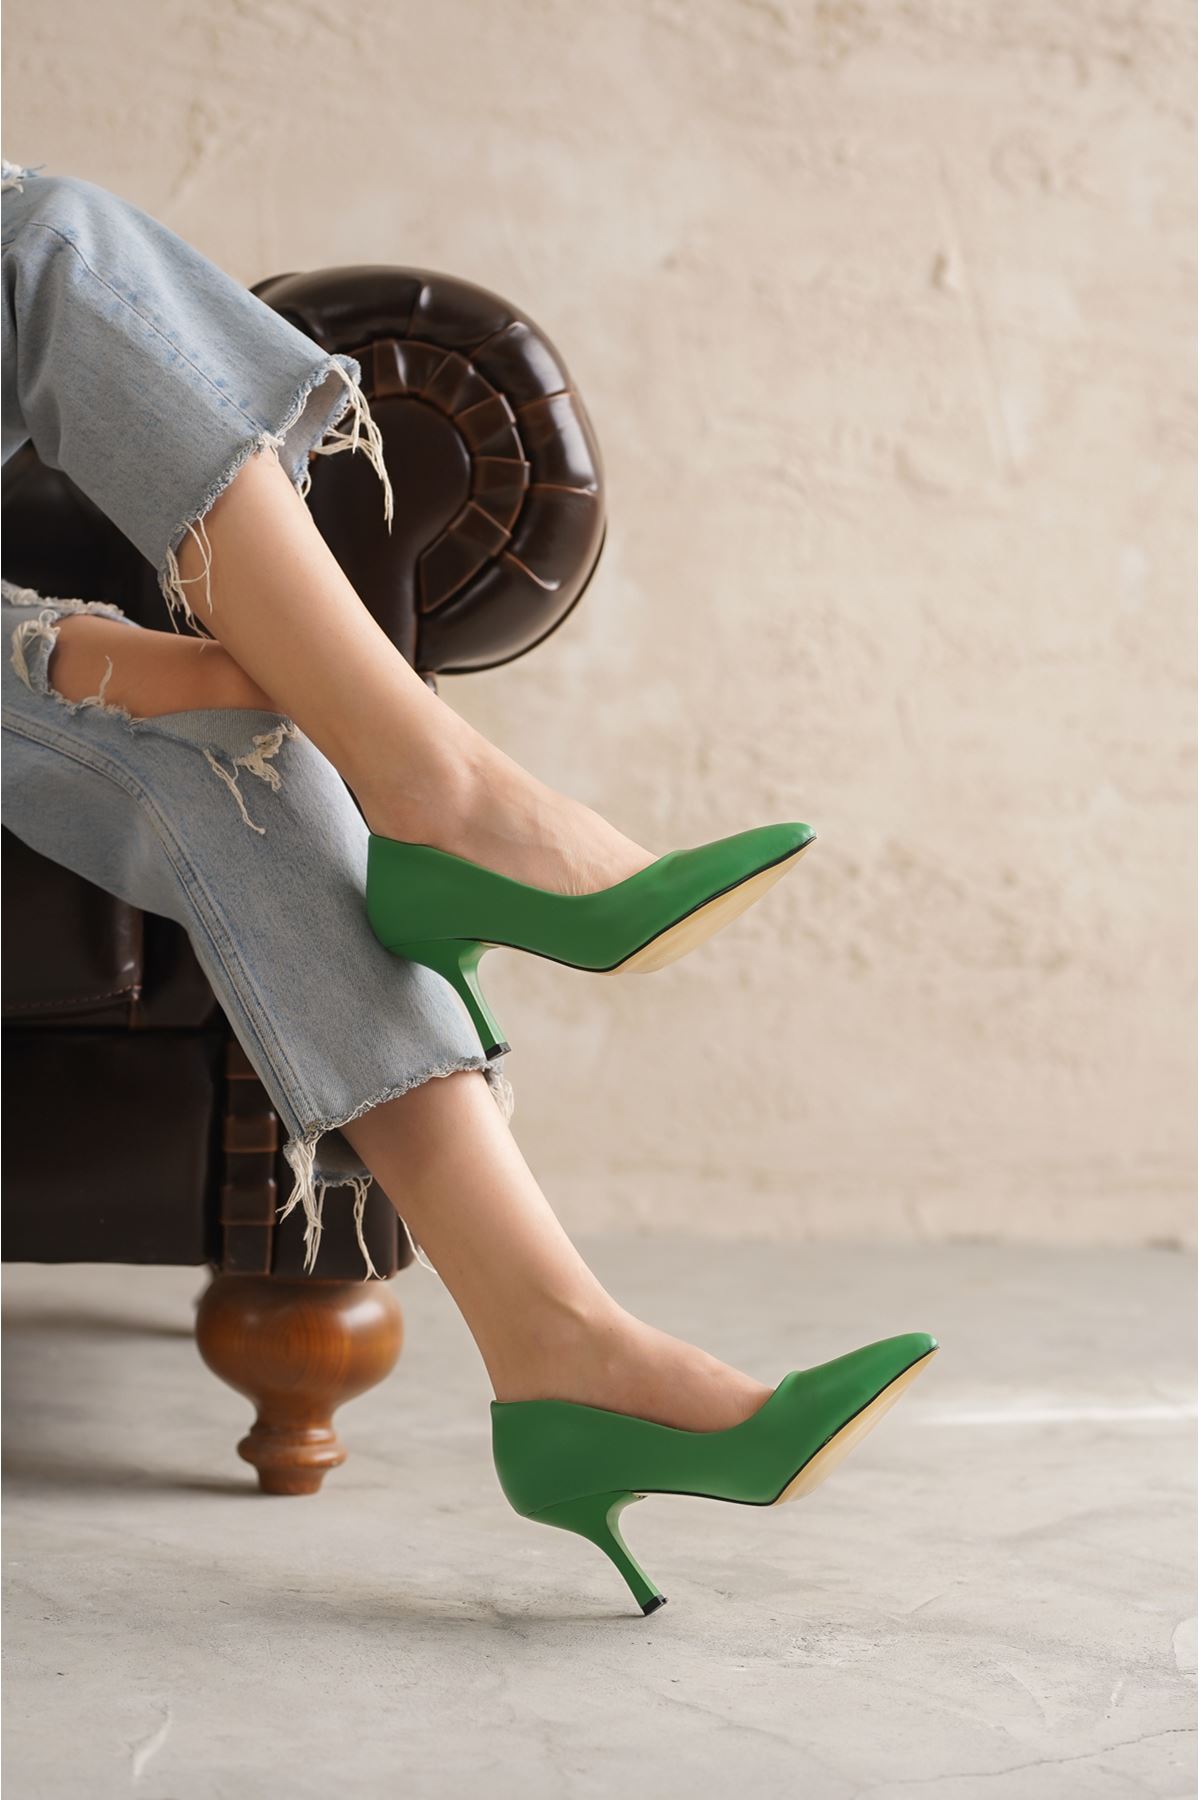 Kadın Armen İnce Kısa Topuklu Stiletto - Yeşil Deri